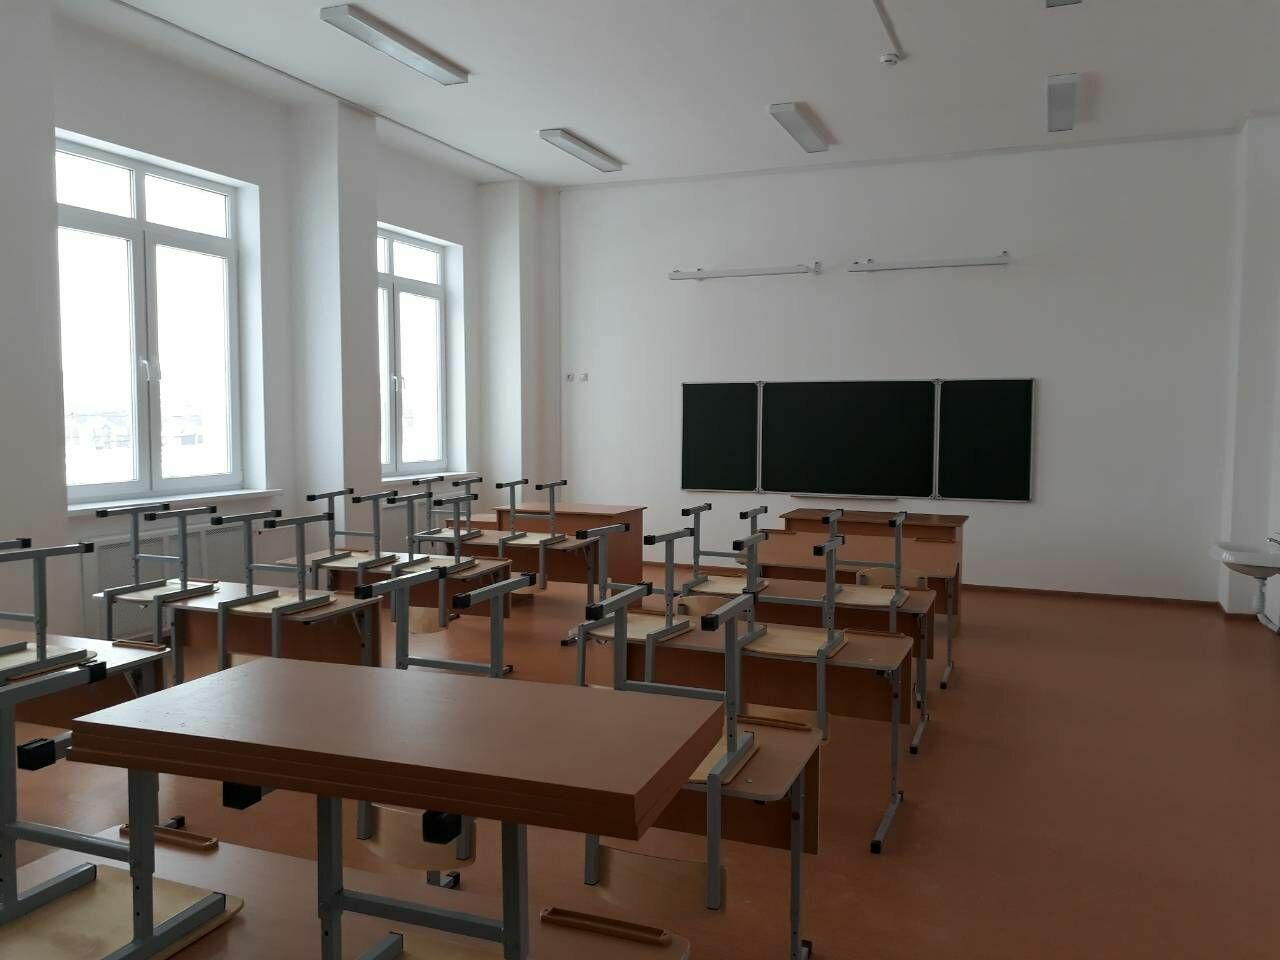 Проект новой школы в Петрозаводске подготовят к лету 2019 года